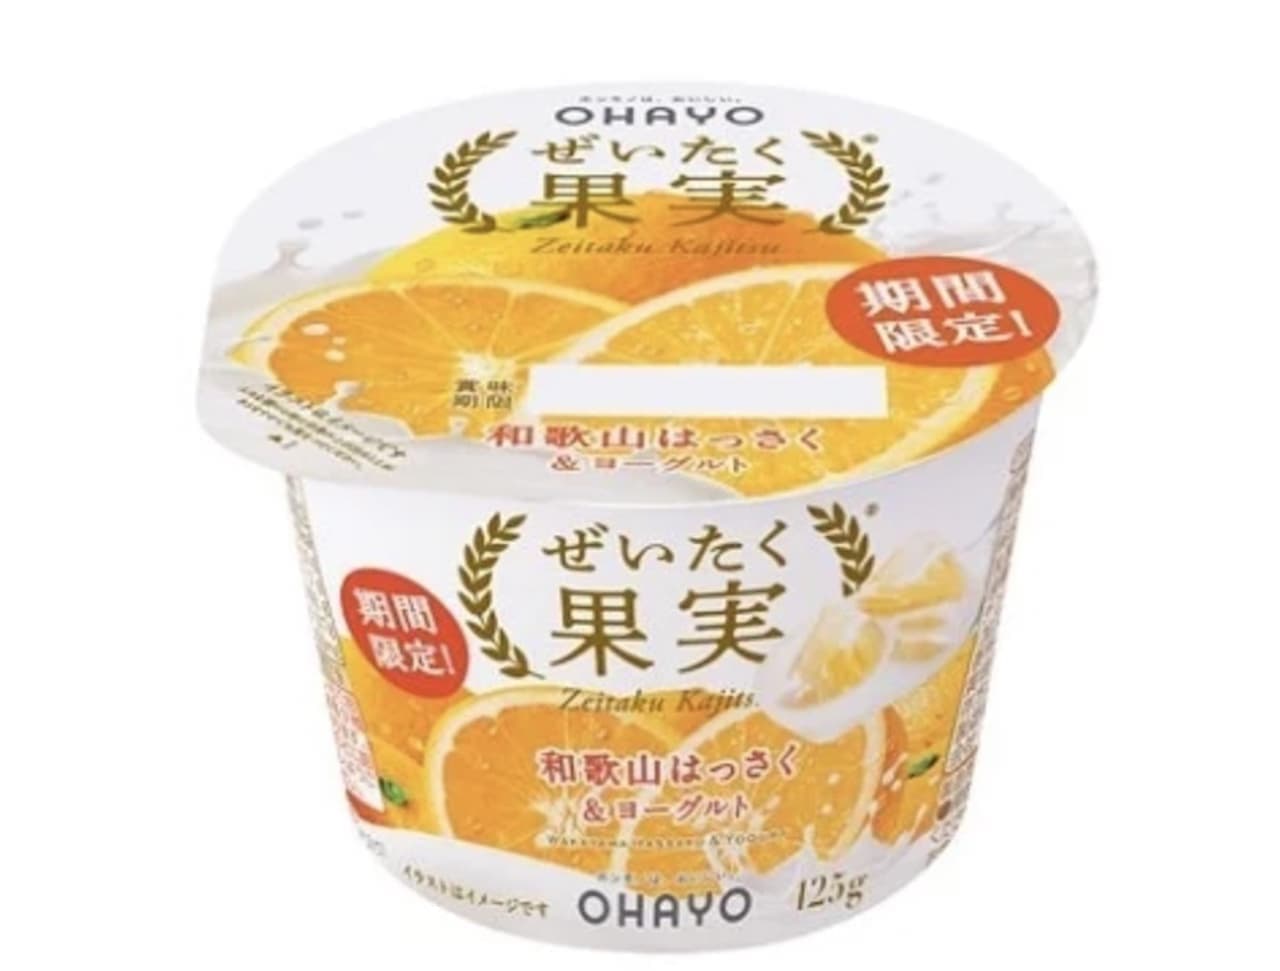 Ohayo Milk Industry "Zexutsu Kajitsu Wakayama Hassaku & Yogurt" (luxury fruit Wakayama Hassaku & Yogurt)